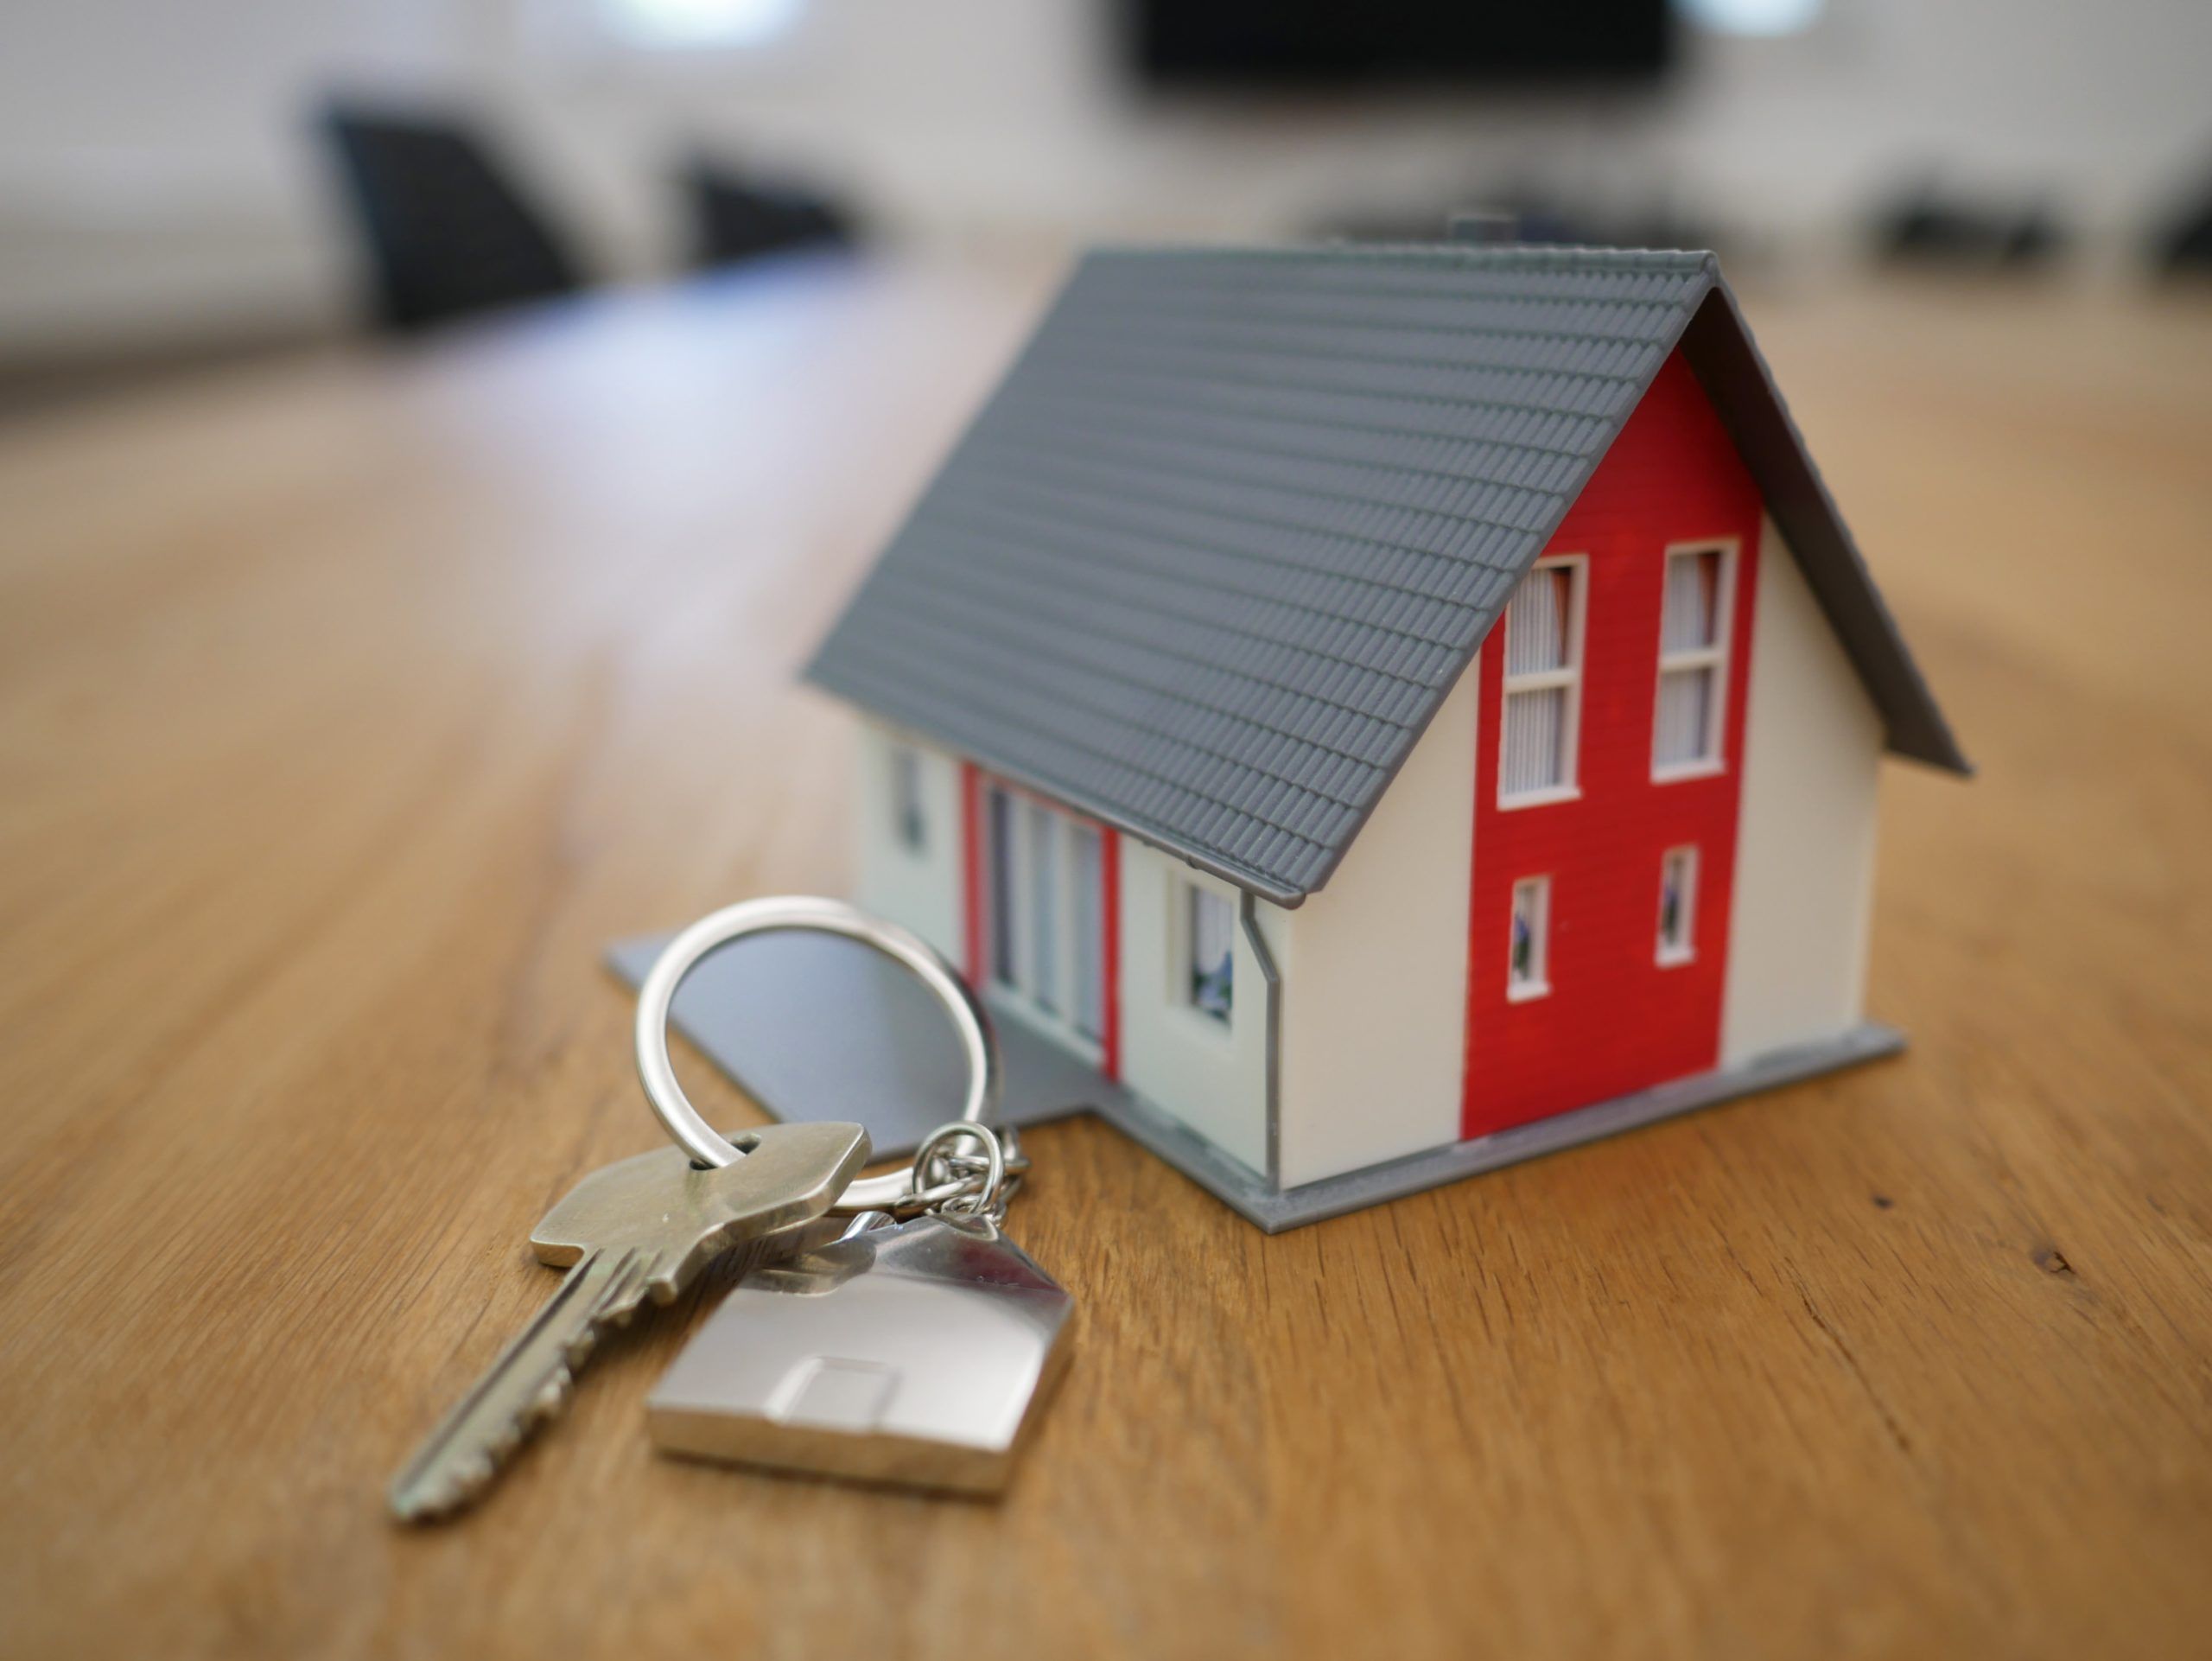 Miniature house and keys